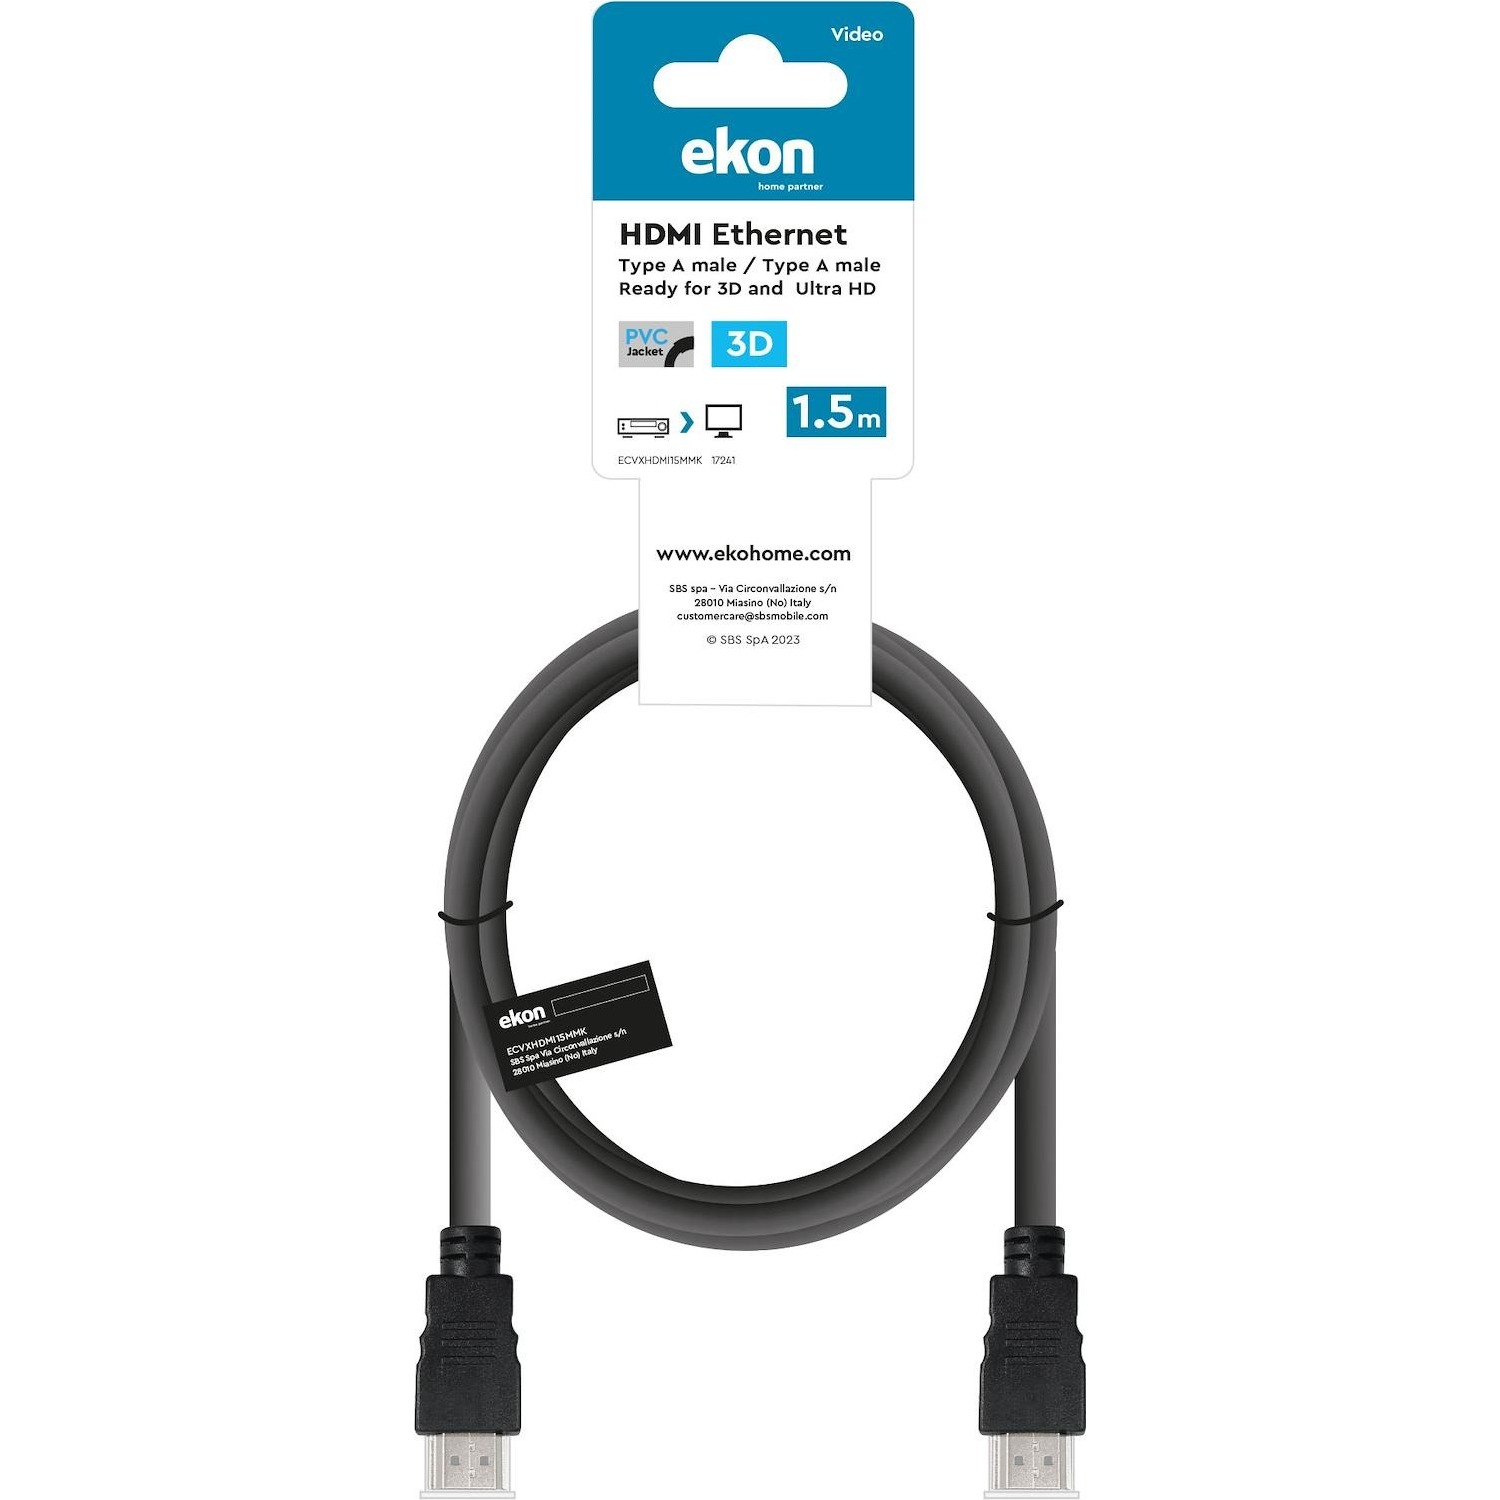 Immagine per Cavo HDMI v.1.4 Ekon alta velocità lunghezza cavo 1,5 metri, con Ethernet ideale per connessioni da DIMOStore